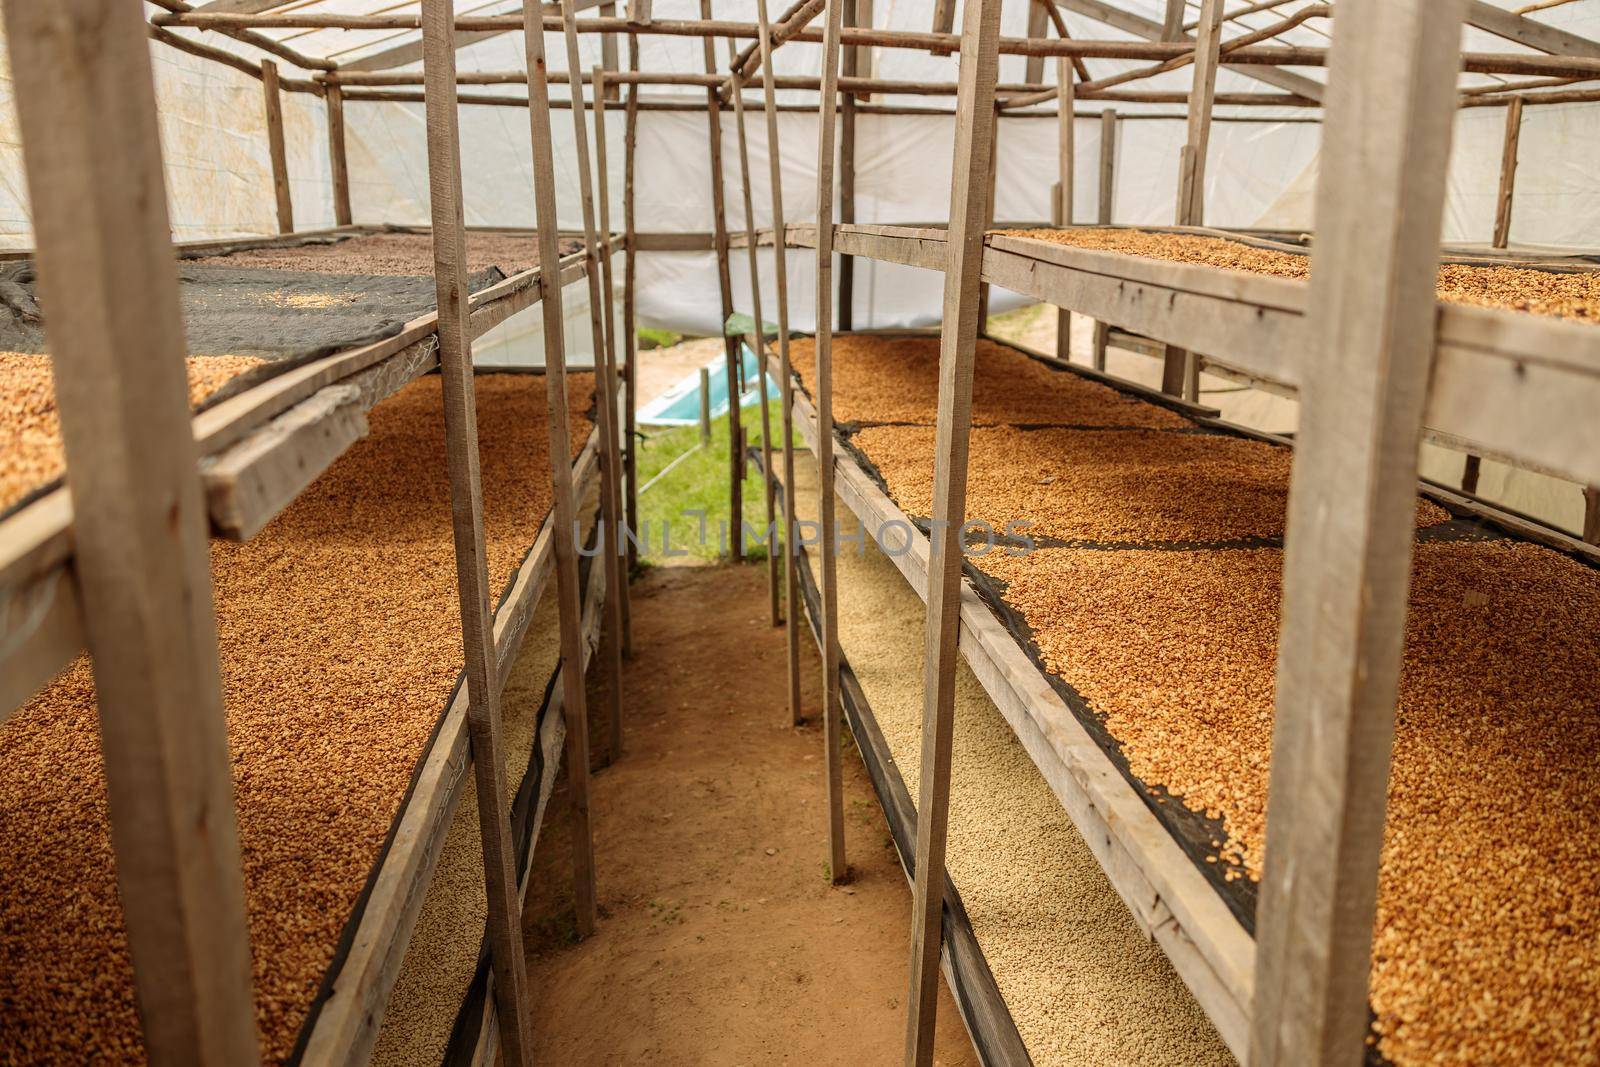 Freshly dried coffee beans ready for processing at farm in Rwanda region